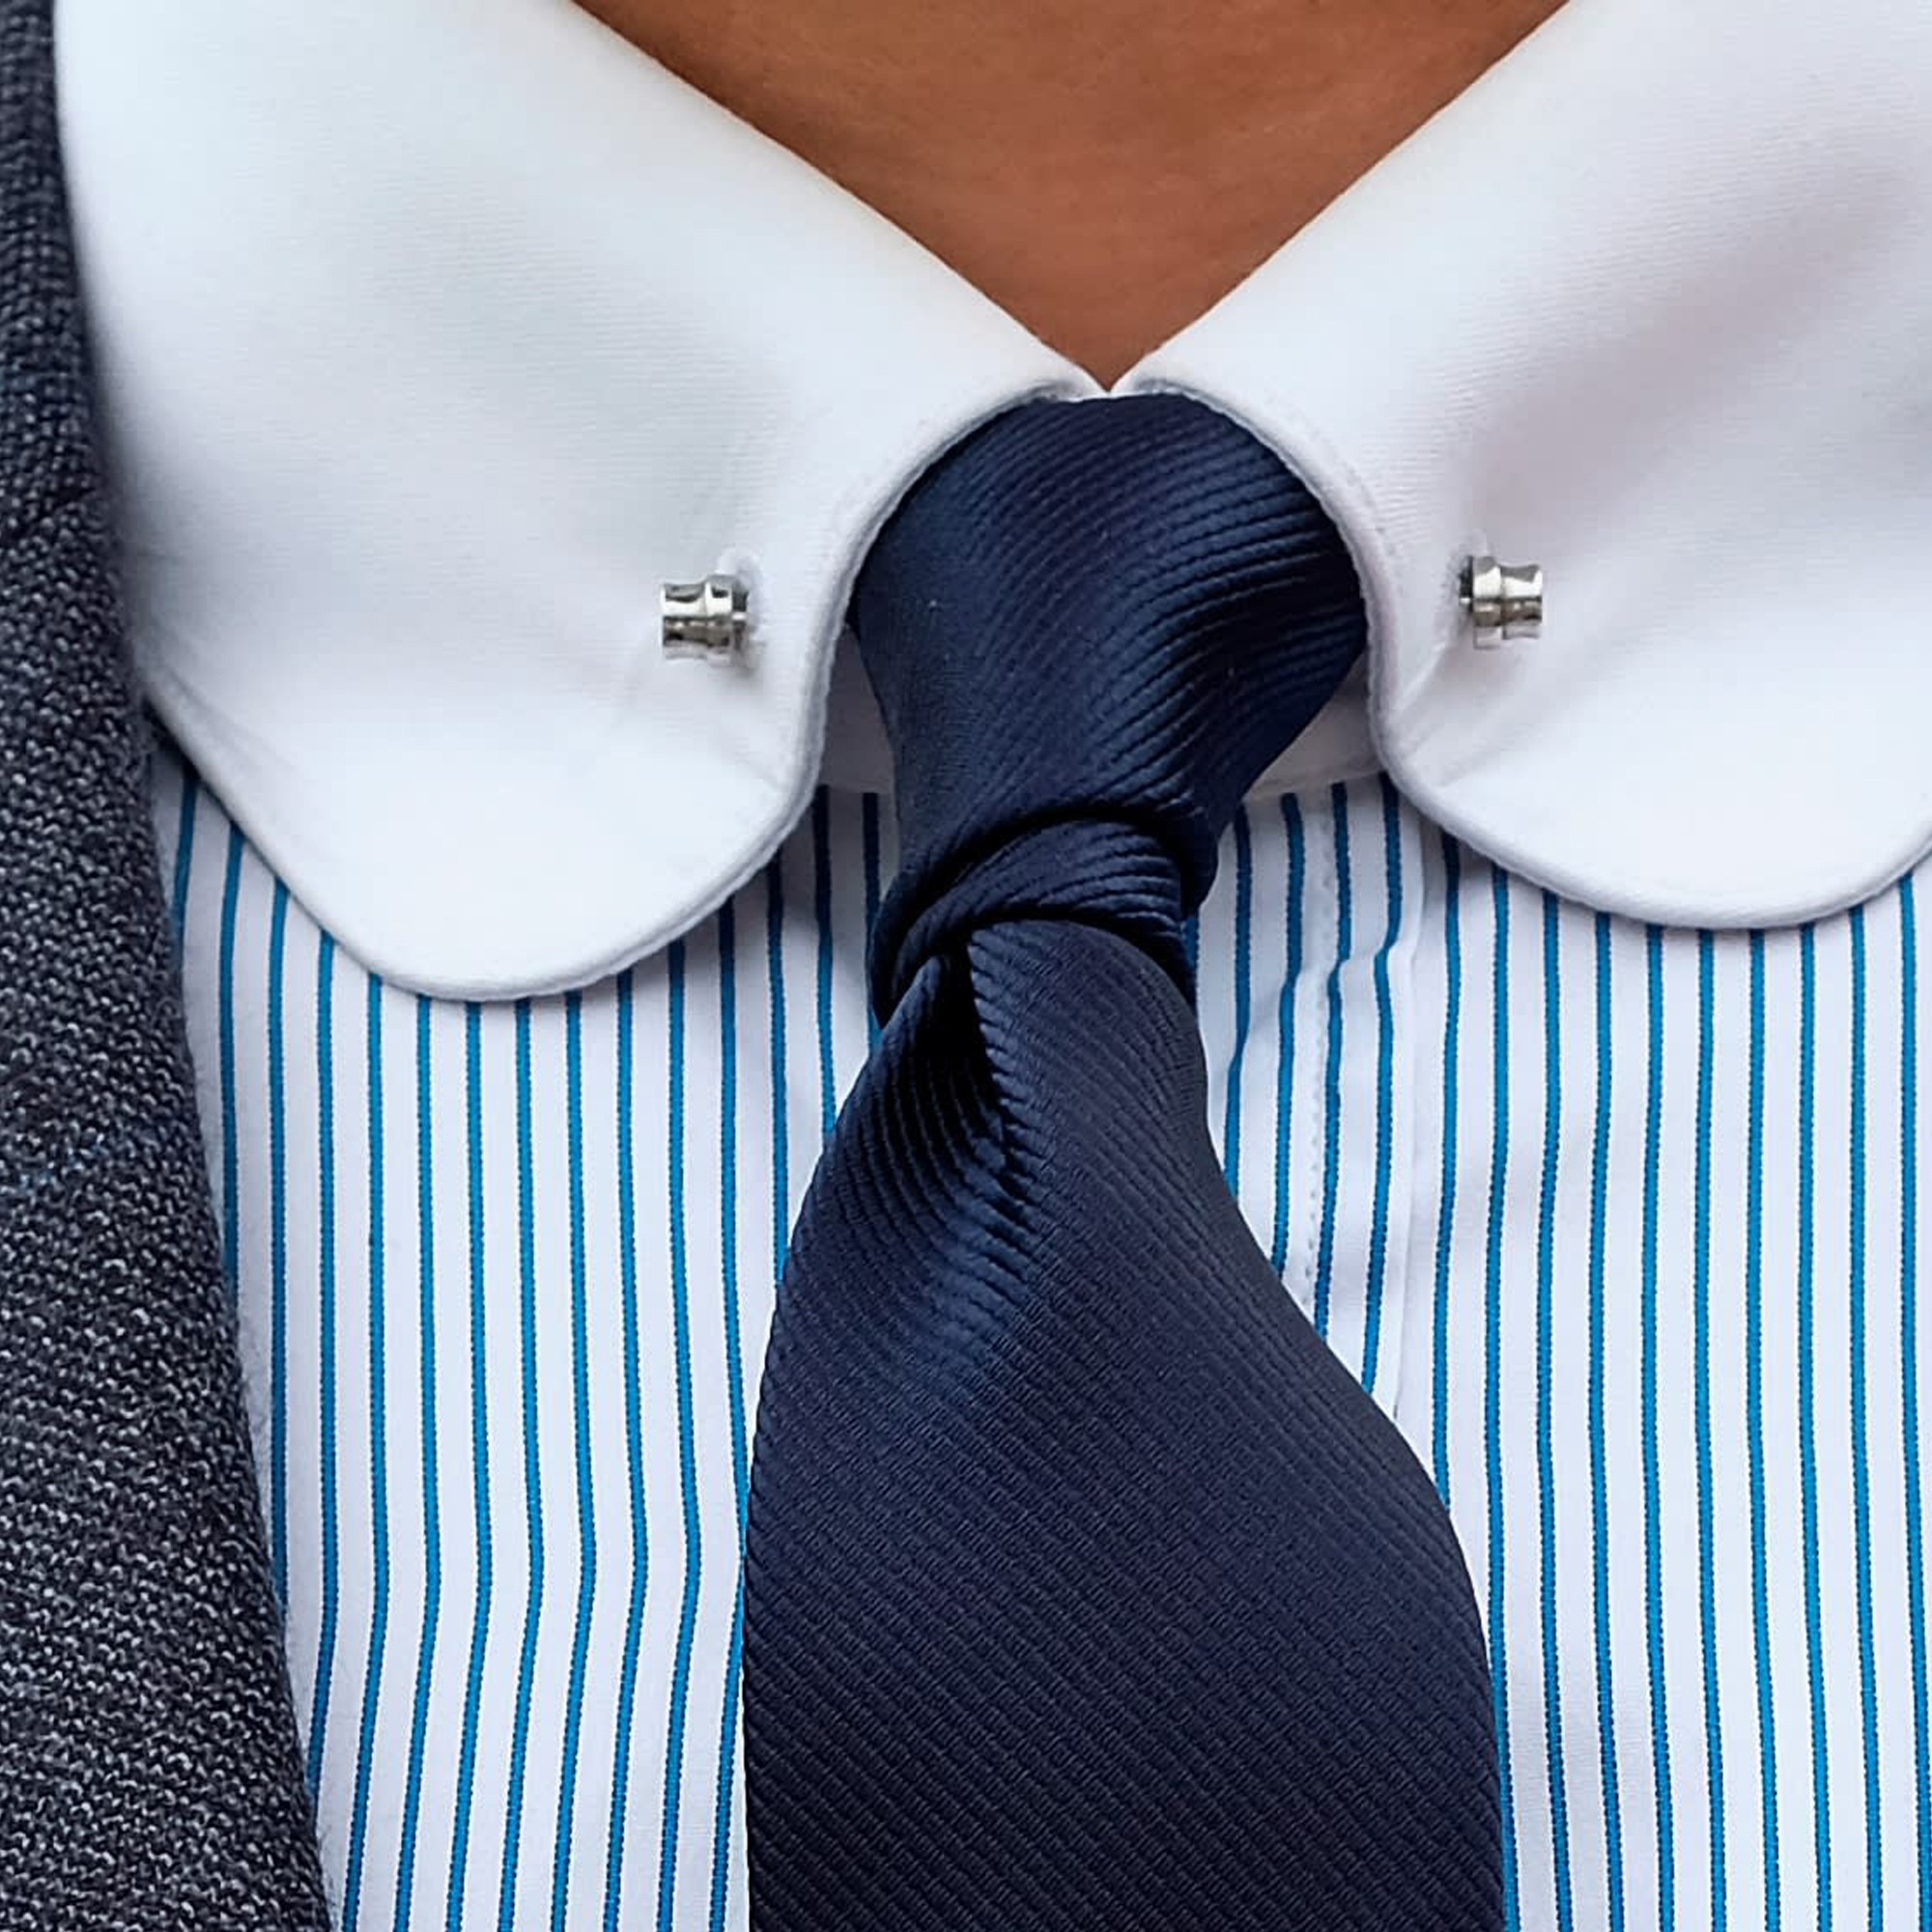 Men's Simple Metal Silver Neck Tie Clip Formal Wedding Suit Necktie  Clasp Clips`